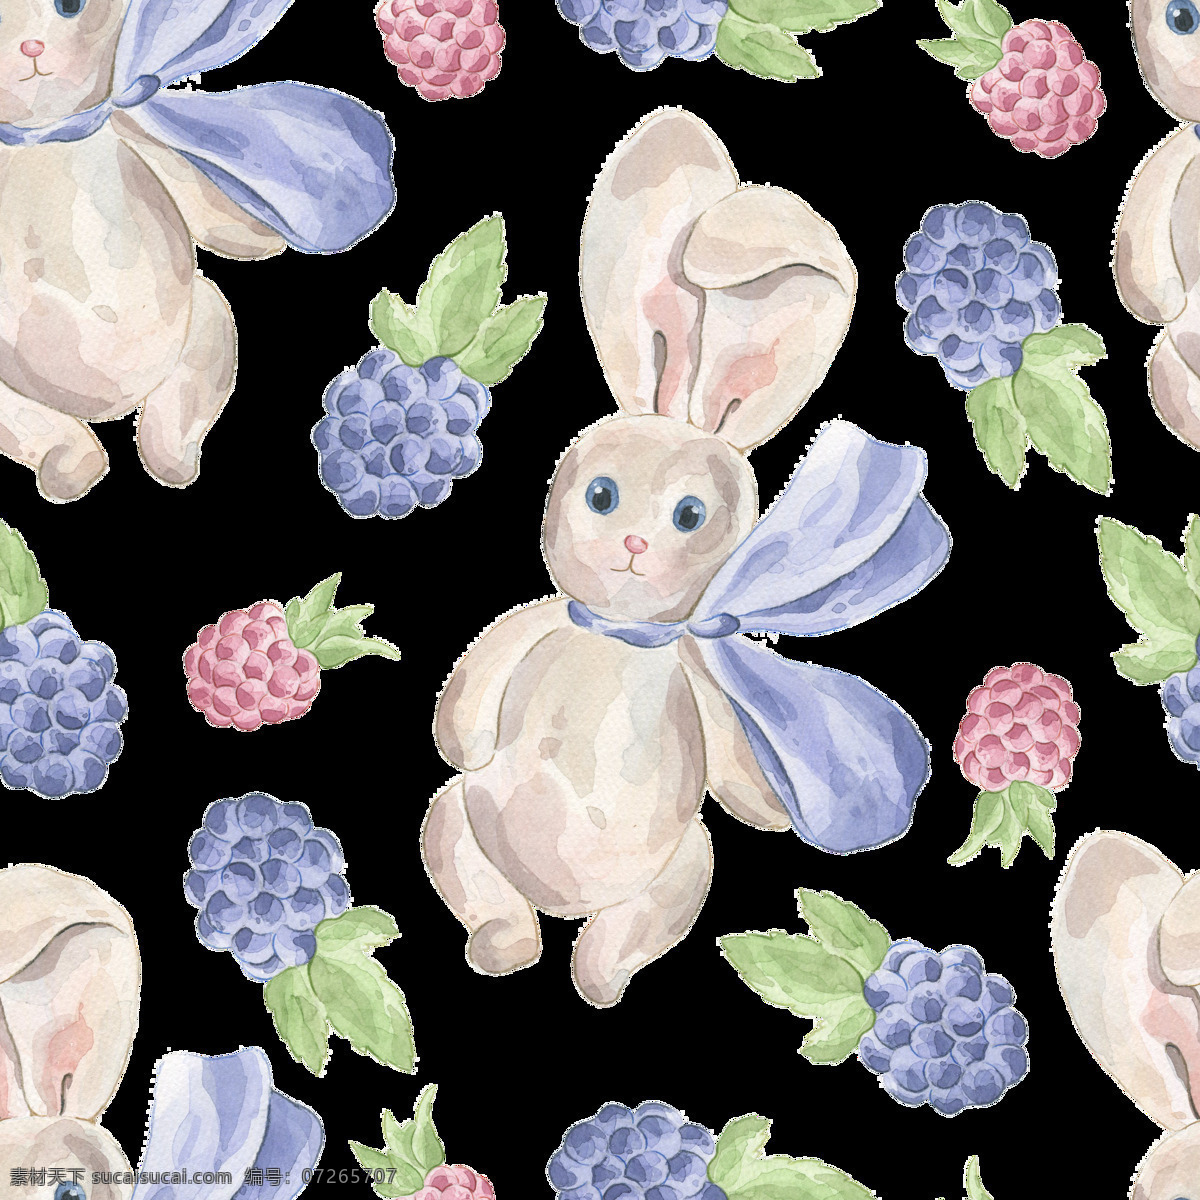 兔子 先生 填充 背景 蓝莓 葡萄 动物 透明素材 免扣素材 装饰图案